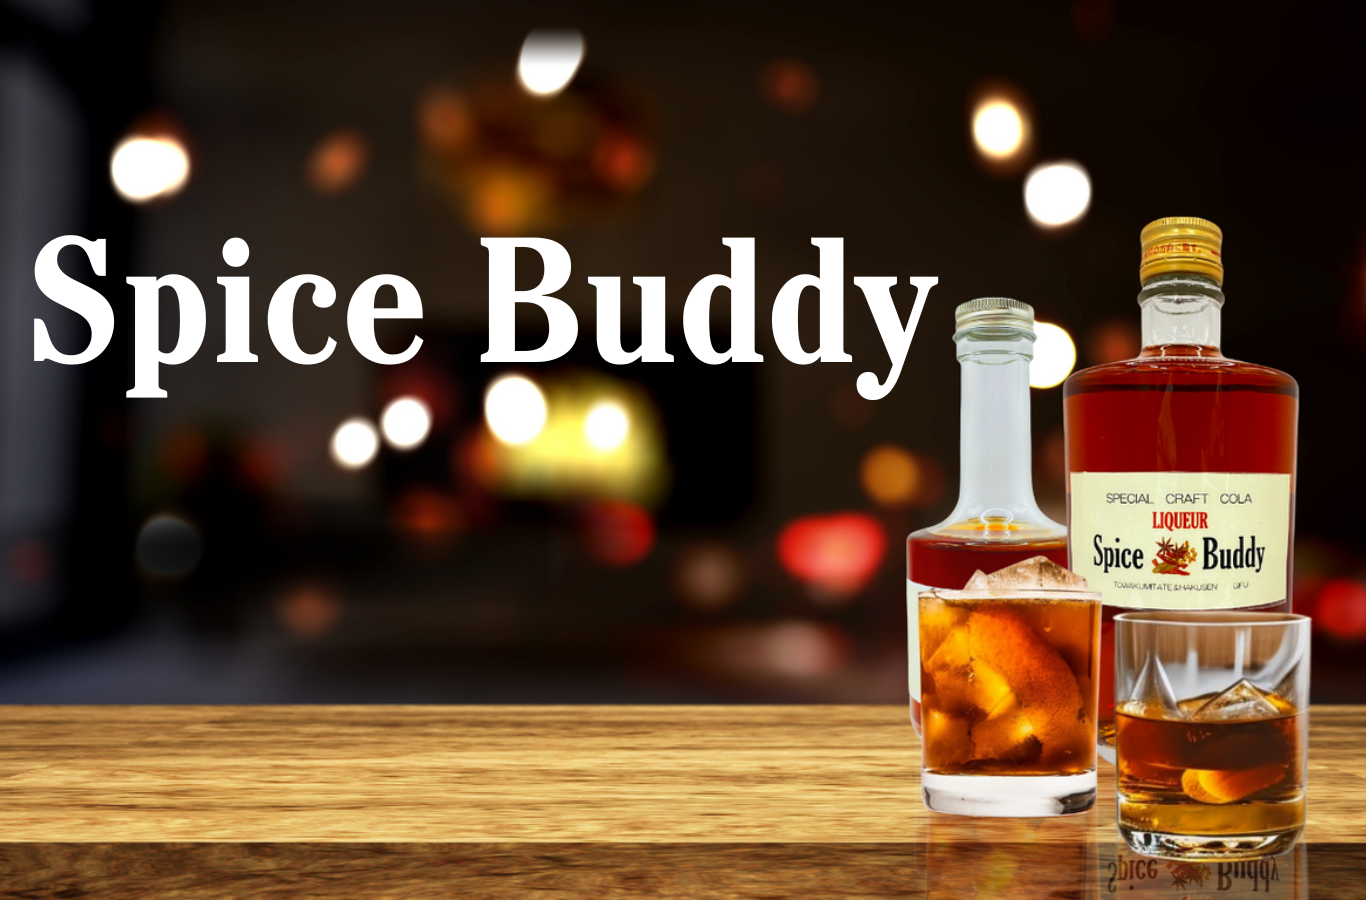 「Spice Buddy」という名前の無添加のクラフトリキュールは、岐阜県産の米を使用した焼酎にクラフトコーラのスパイスを漬け込んで作られています。このリキュールは、地元の白扇酒造とのコラボレーションで生まれ、その名前も由来しています。  「スパイスバディ」はフェアトレードコーラの14種類の天然素材スパイスを贅沢に使用し、歴史ある伝統的製法で作られ、職人技が活かされています。また、アレルギー反応が心配な方でも安心して飲むことができます。  このリキュールのアルコール度数は40度で、クラフトコーラのスパイスの香りと味わいはピリッと辛く、スパイシーです。そのため、料理との相性も抜群です。飲み方は、炭酸で割ったり、ストレートで飲むこともできます。また、アイスクリームや、かき氷のデザートのレシピにも使うことができ、美味しい味わいを楽しむことができます。  「Spice Buddy」は高級感があり、おしゃれな見た目も特徴です。特別な日のギフトとしてもおすすめです。